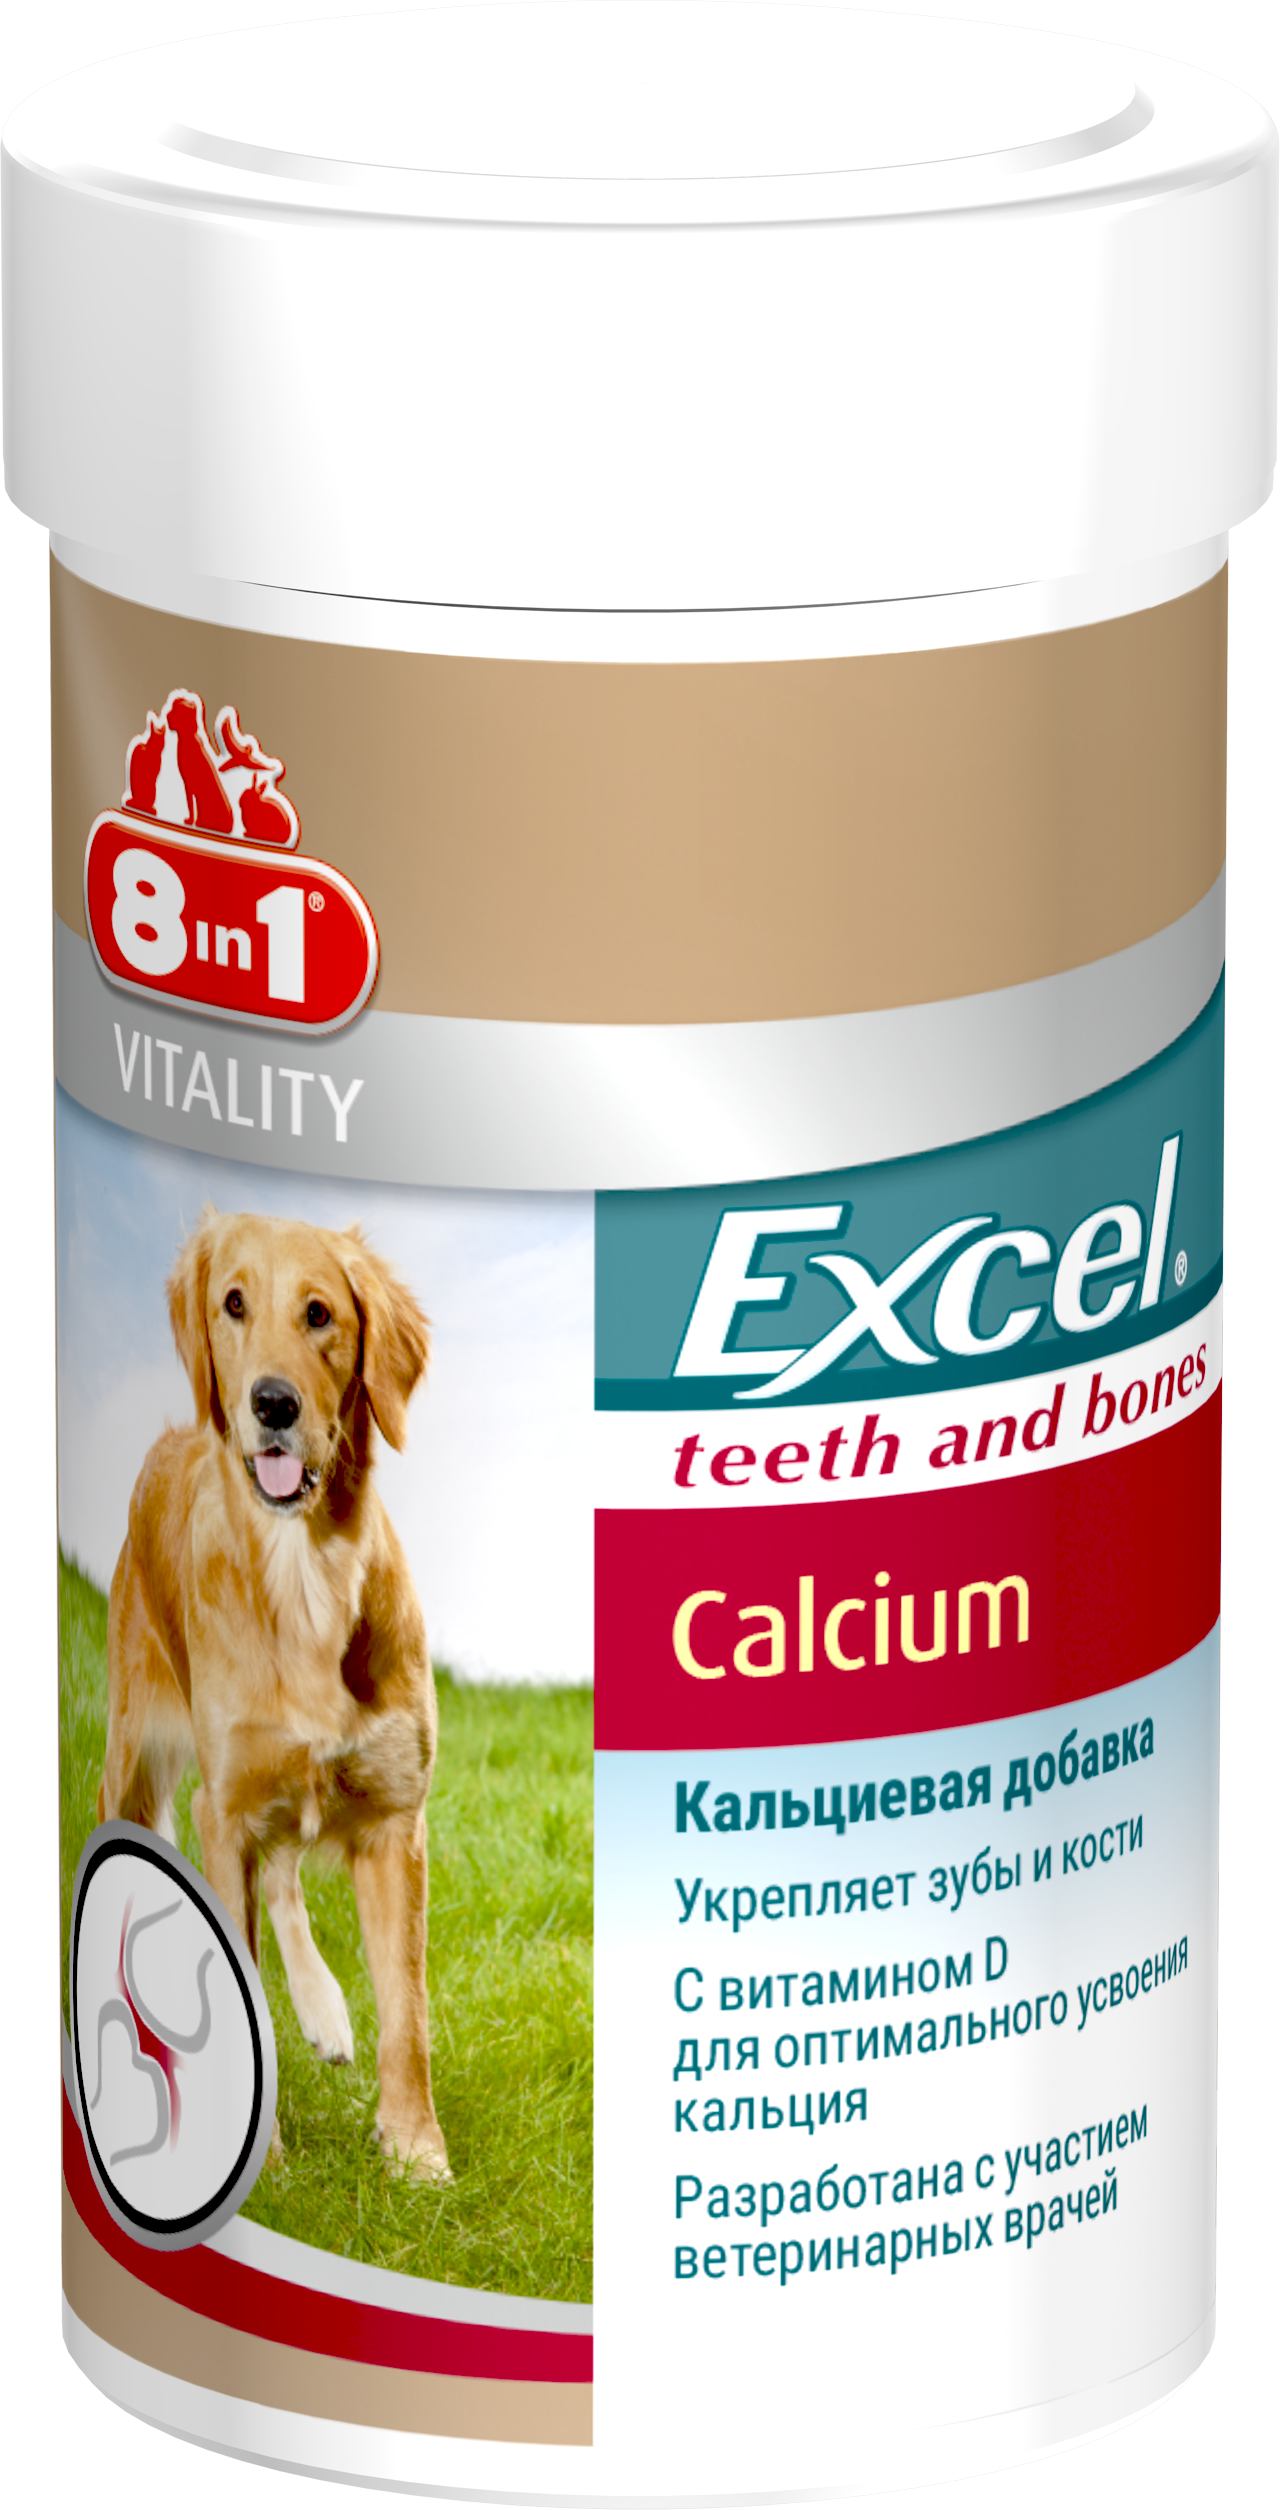 Кальций для собак 8in1 Excel Calcium, 990 г, 1700 шт. (660893 /115564) - фото 1